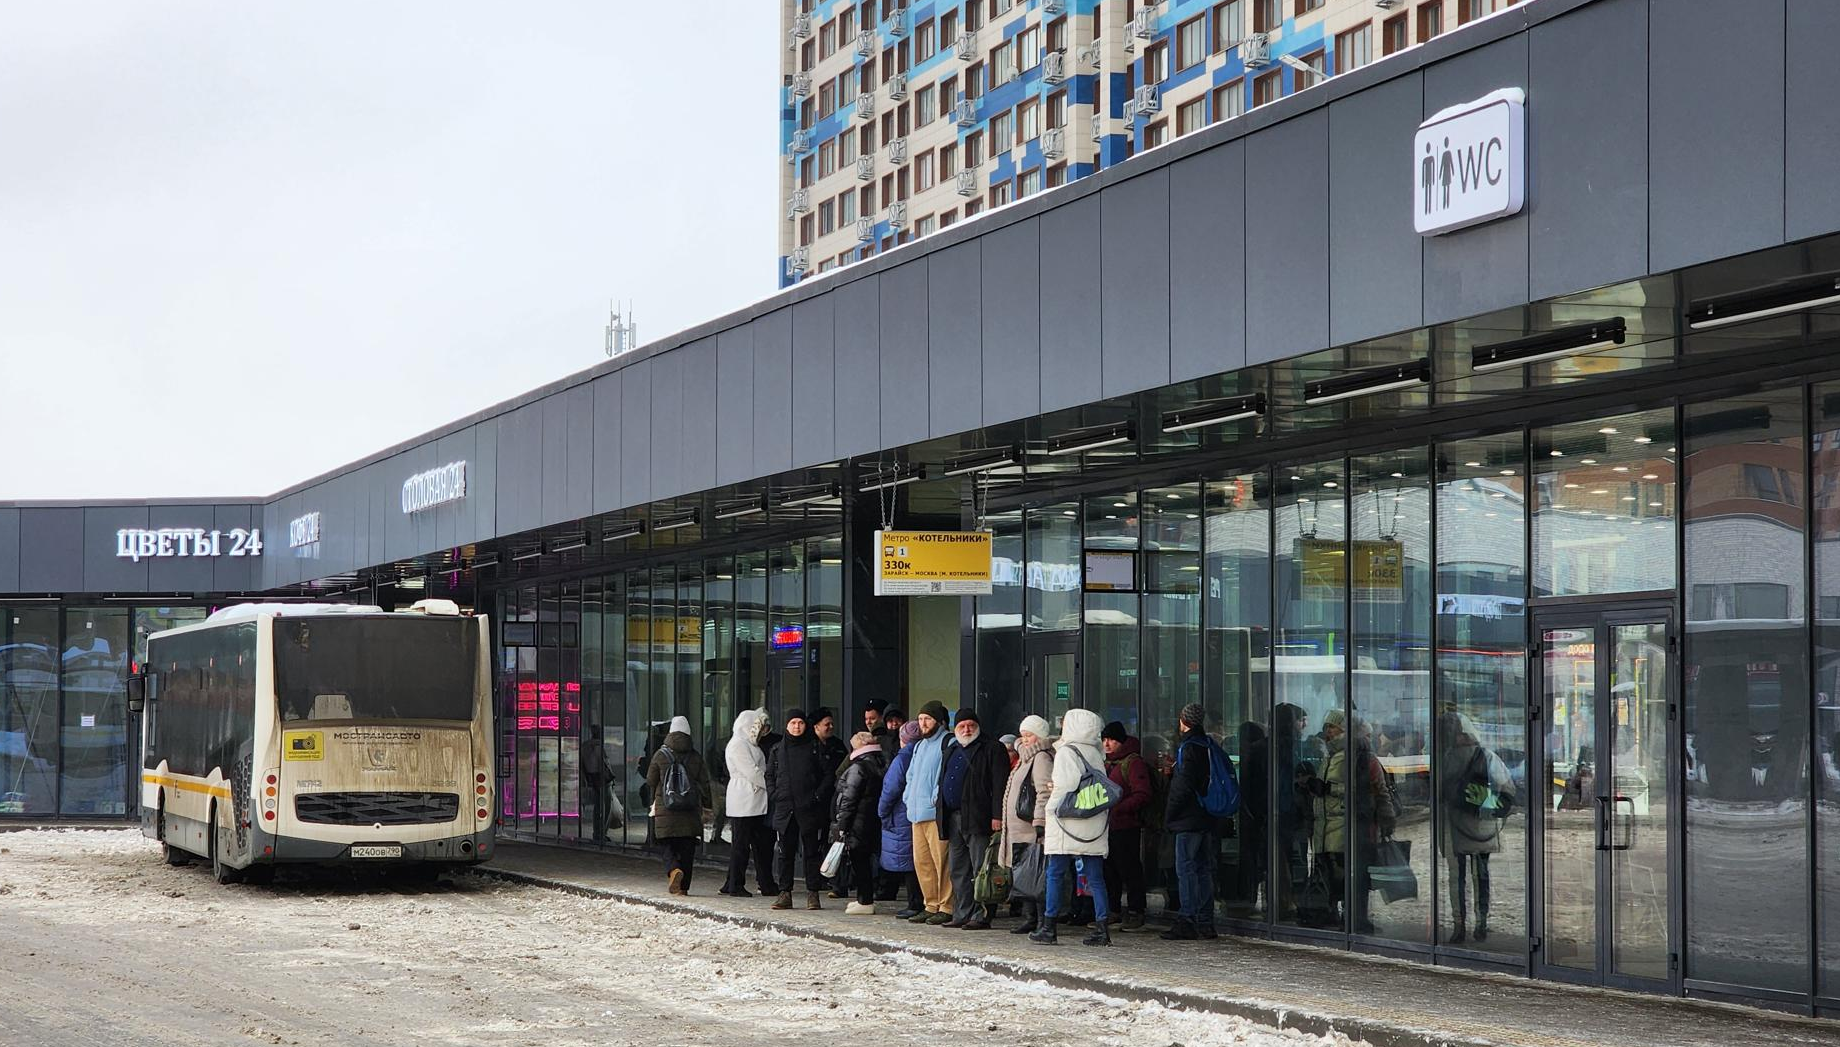 Комфортно и тепло: Люберчане могут подождать автобус в новом павильоне